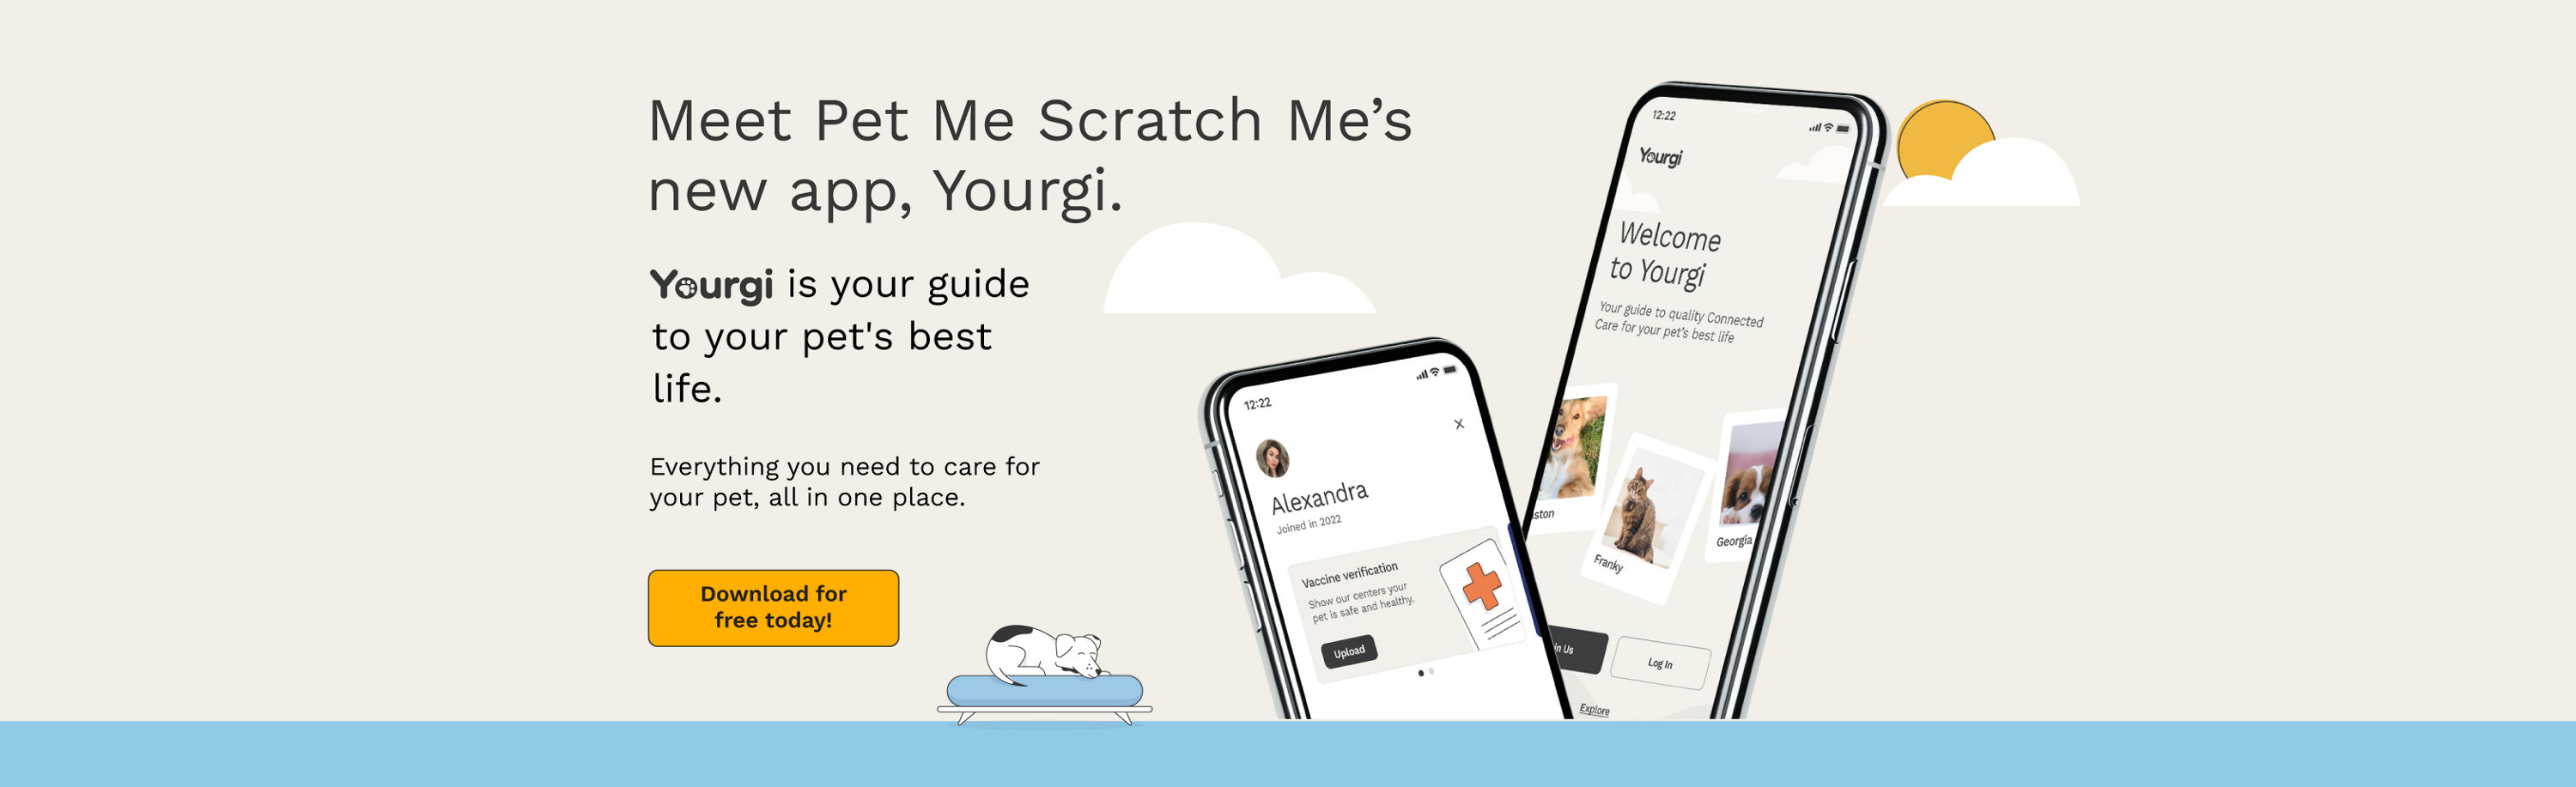 Meet Pet Me Scratch Me's new app, Yourgi.